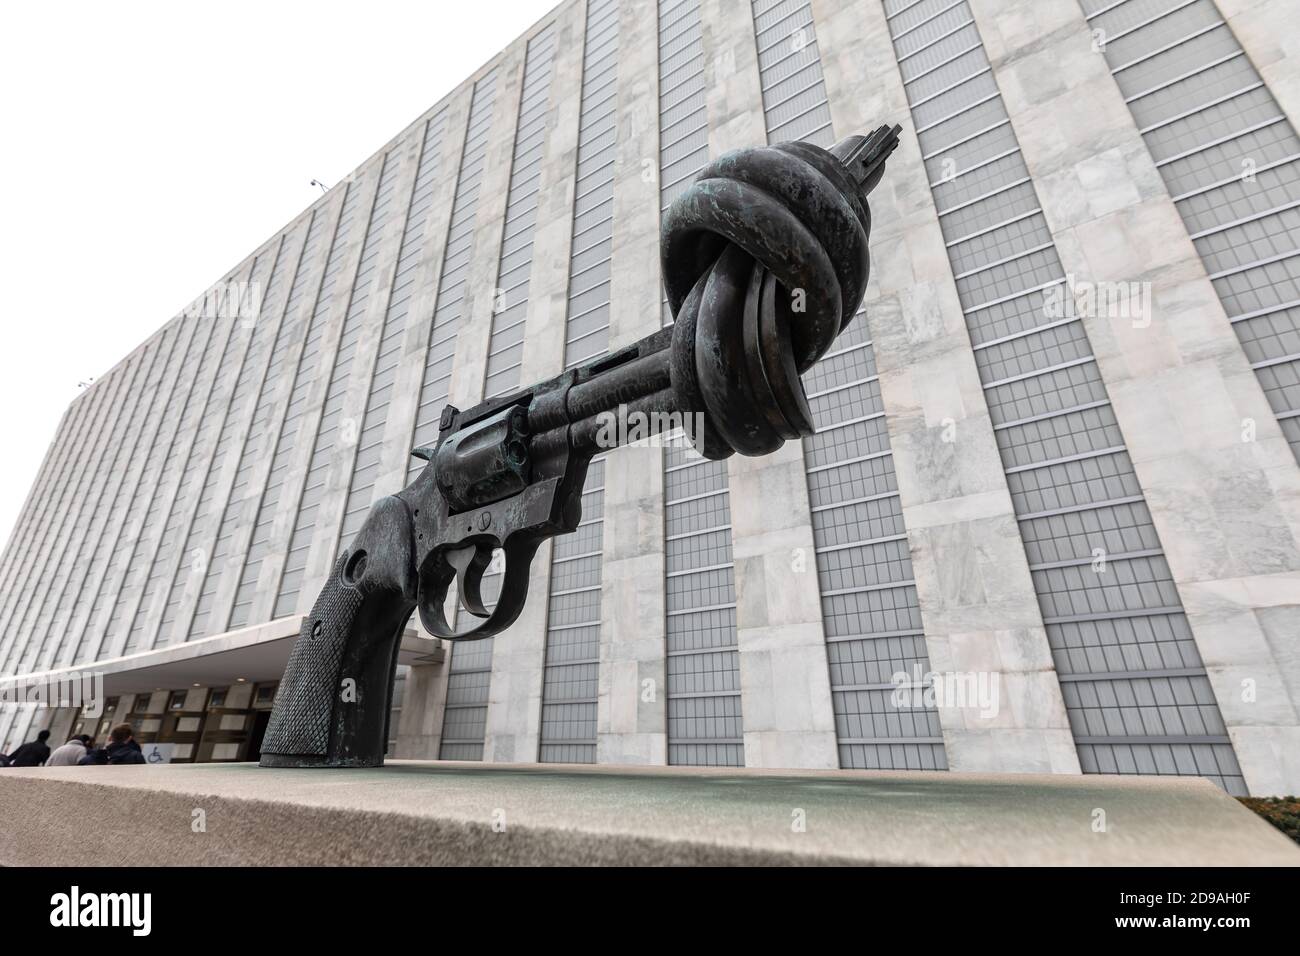 NUEVA YORK, EE.UU. - Feb 20, 2019: Non-violence es una escultura de bronce del artista sueco Carl Reutersward de un gran revólver de Colt Python .357 Magnum w Foto de stock